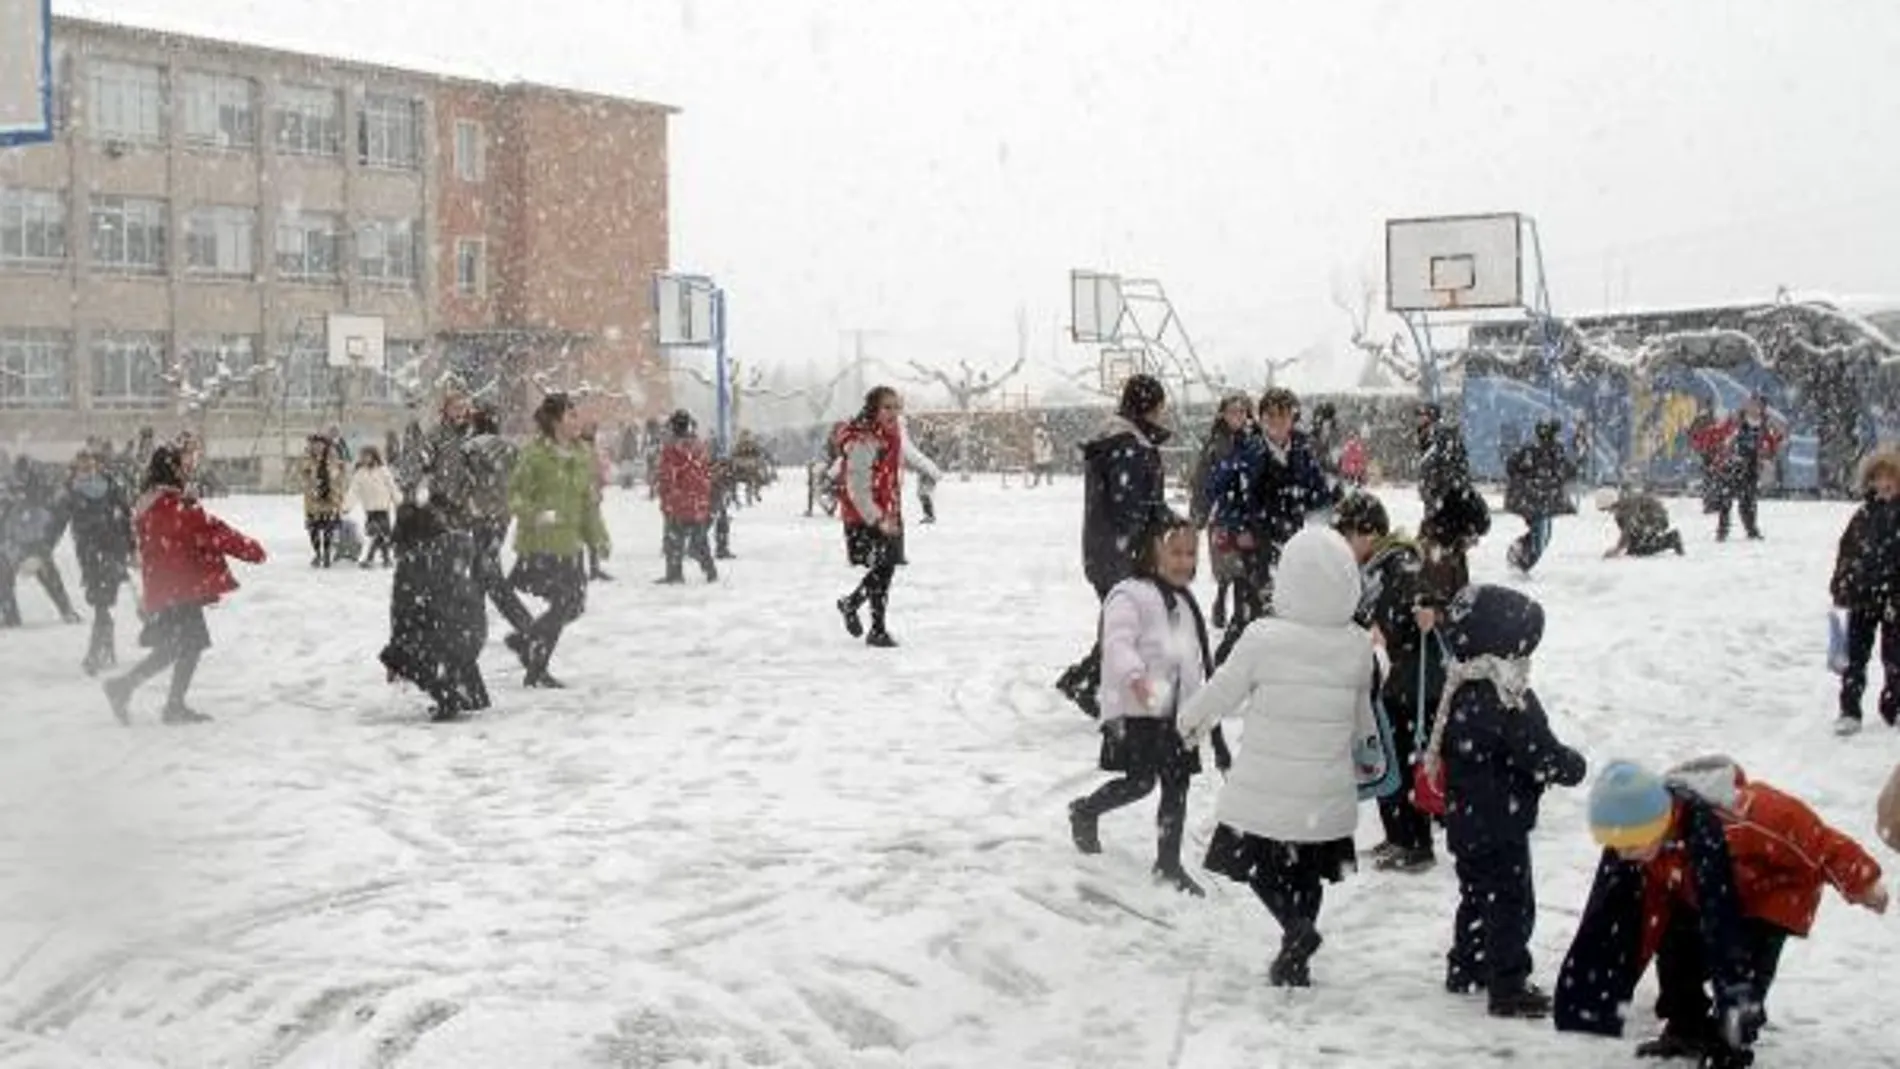 Cerca de 16.600 niños de toda España no pudieron acudir al colegio por el fuerte temporal de nieve y frío